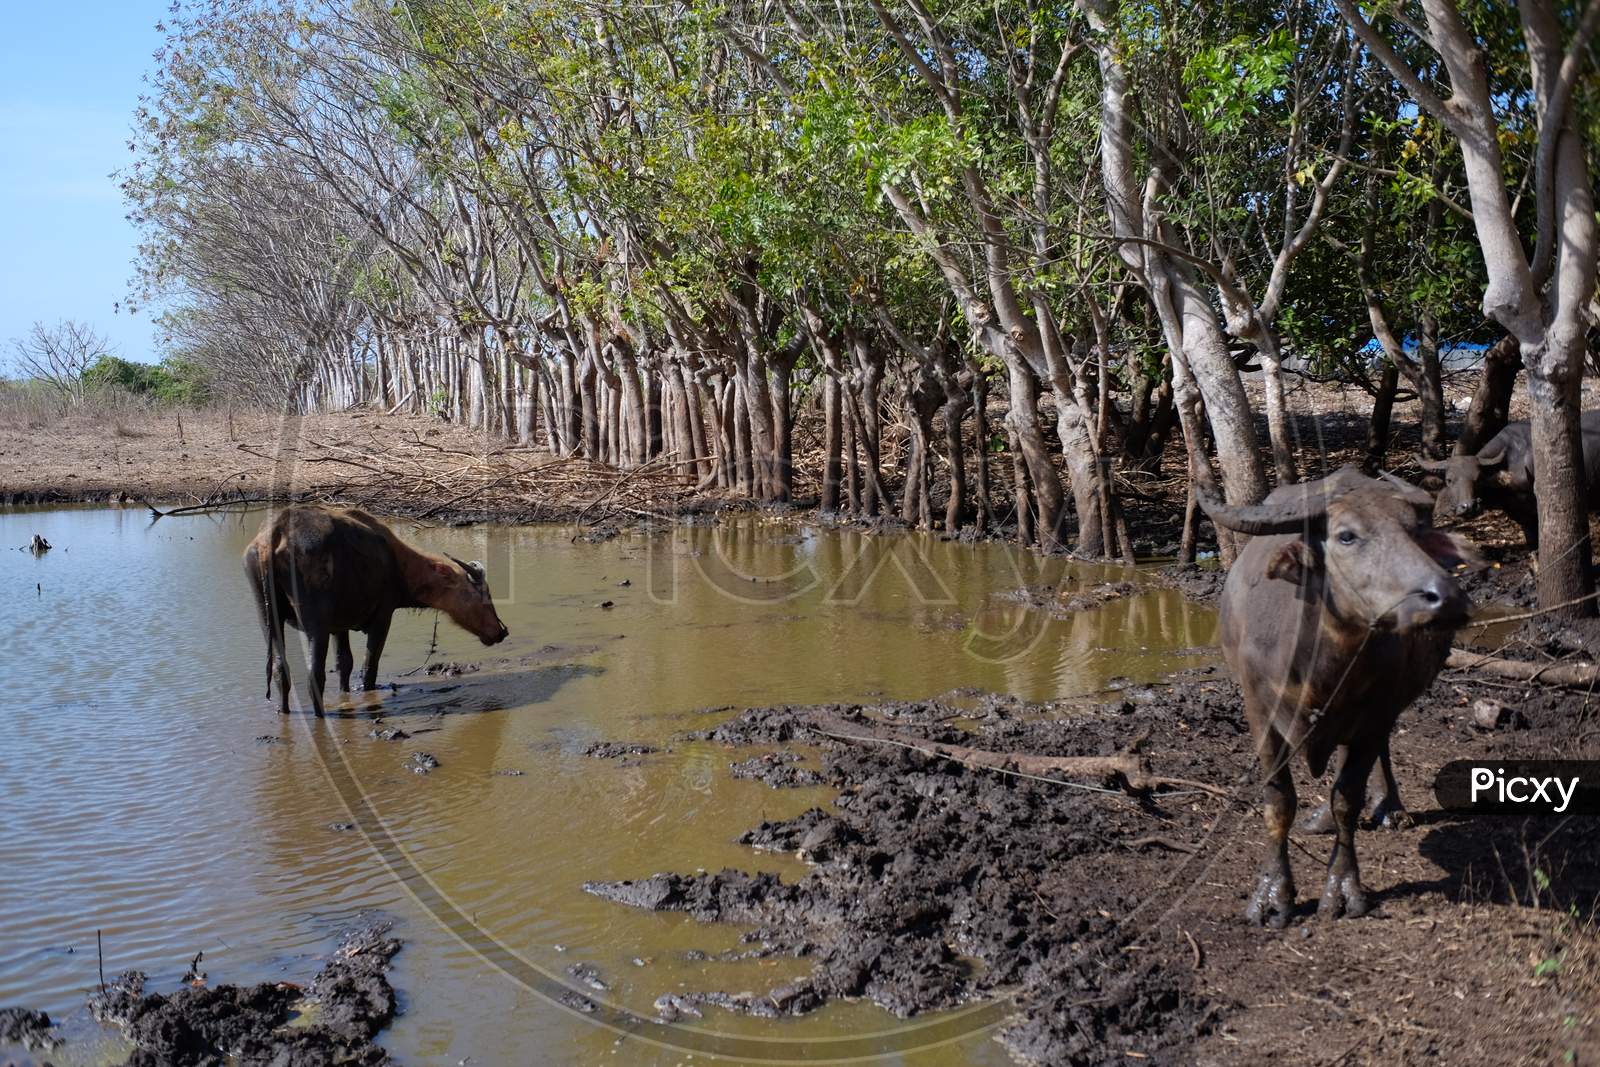 Buffalo shepherd in a mud pond